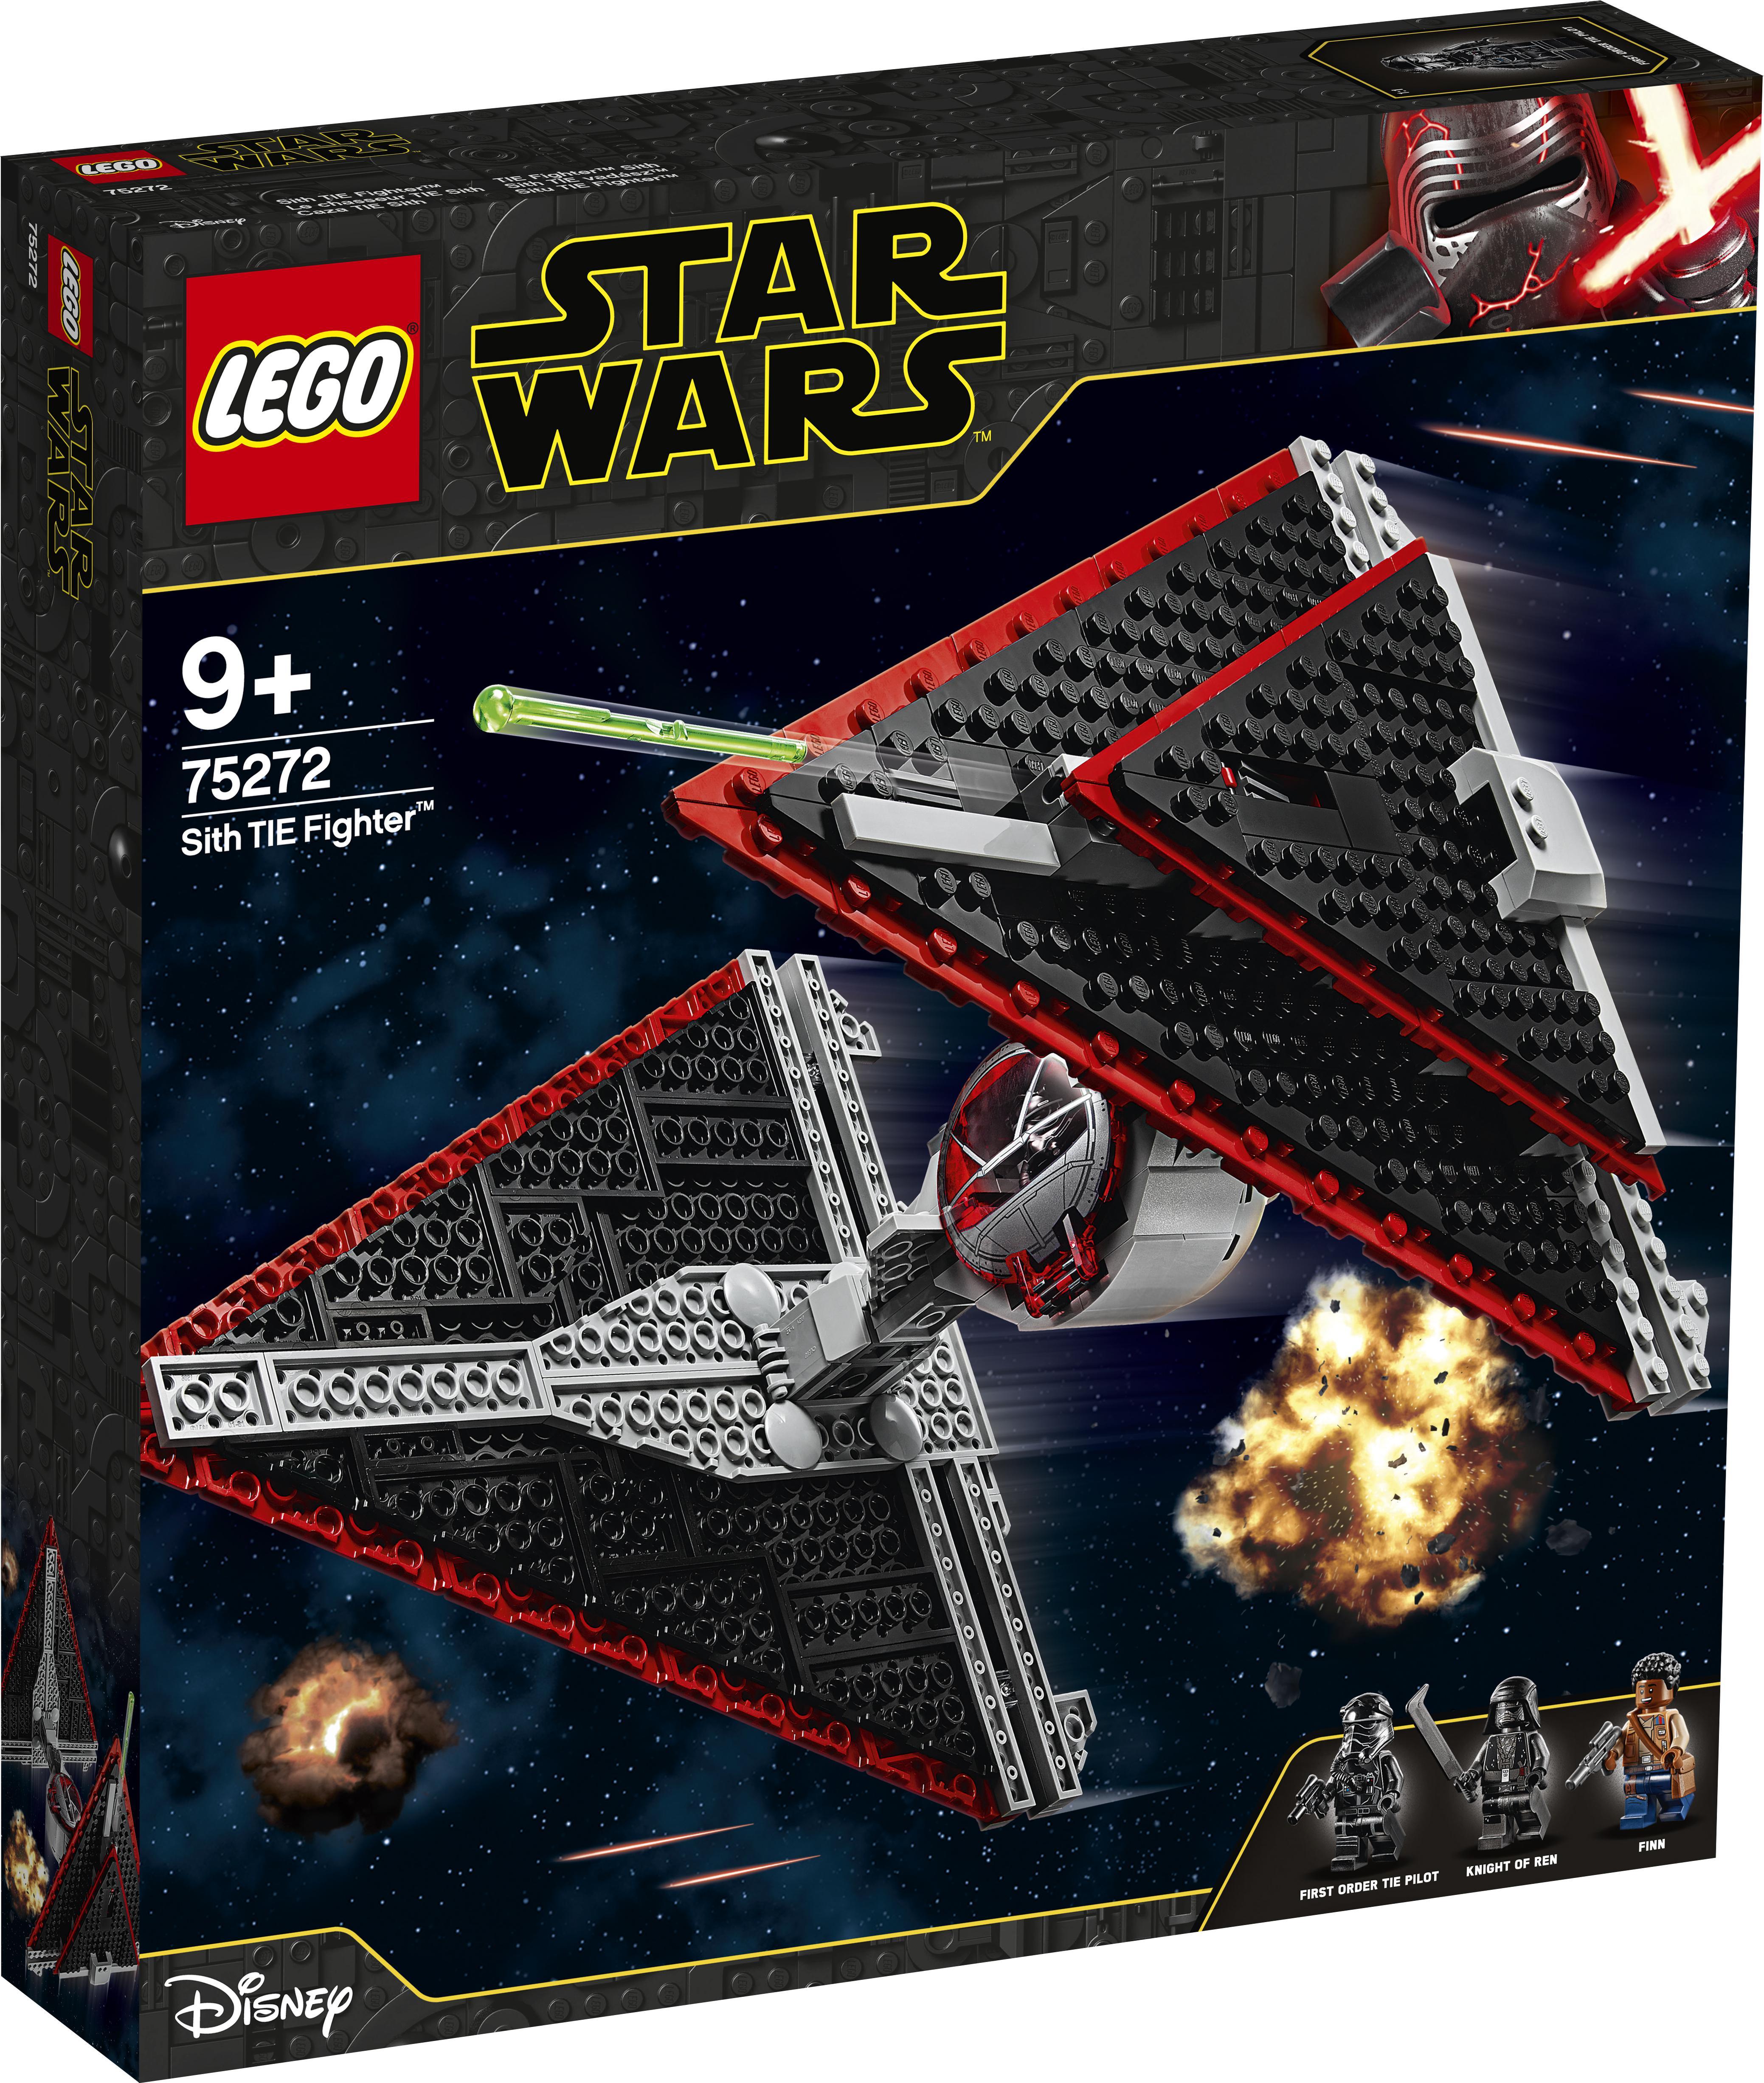 LEGO Star Wars Episode